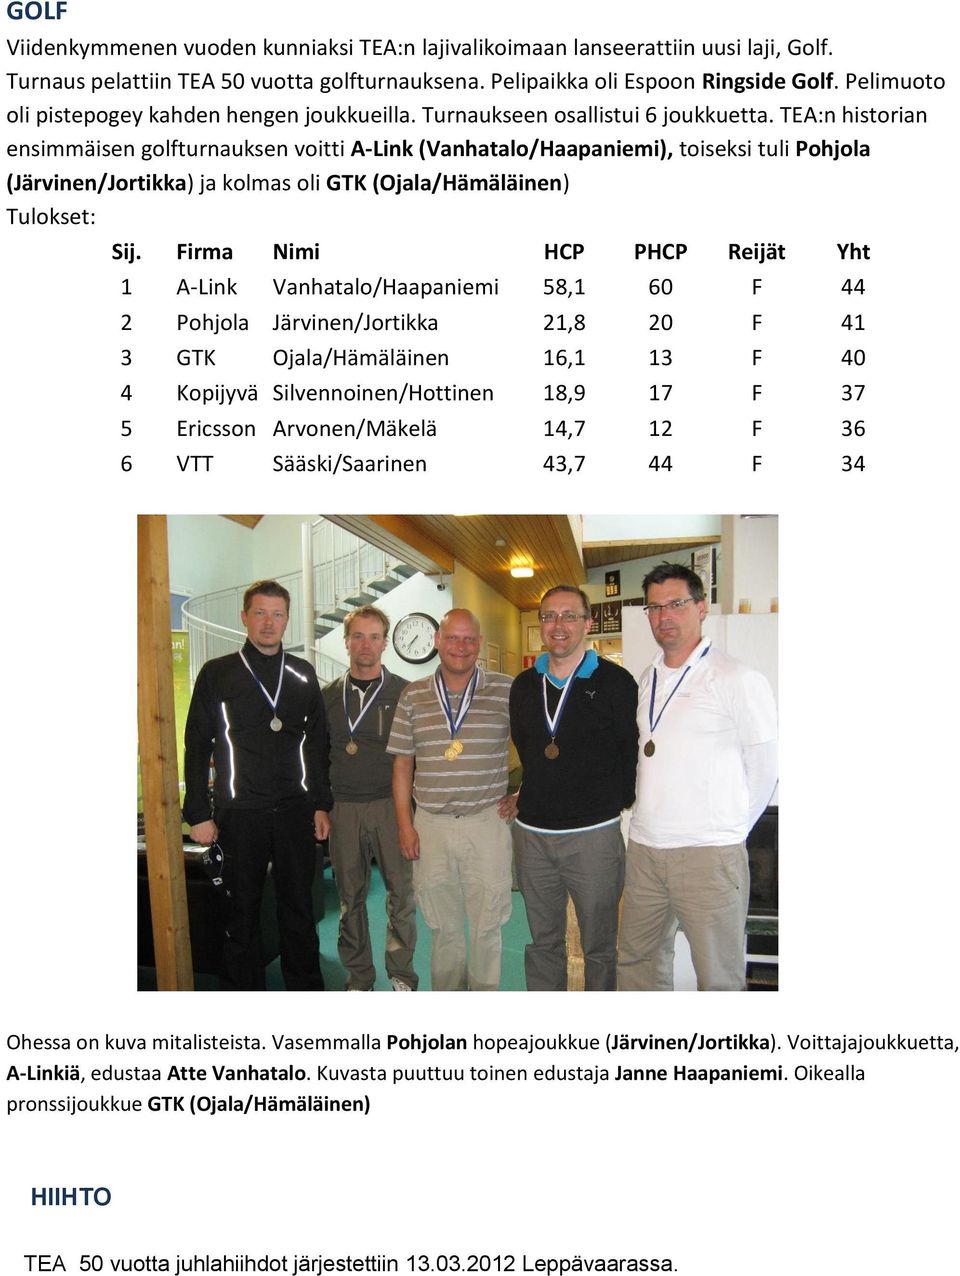 TEA:n historian ensimmäisen golfturnauksen voitti A-Link (Vanhatalo/Haapaniemi), toiseksi tuli Pohjola (Järvinen/Jortikka) ja kolmas oli GTK (Ojala/Hämäläinen) Tulokset: Sij.